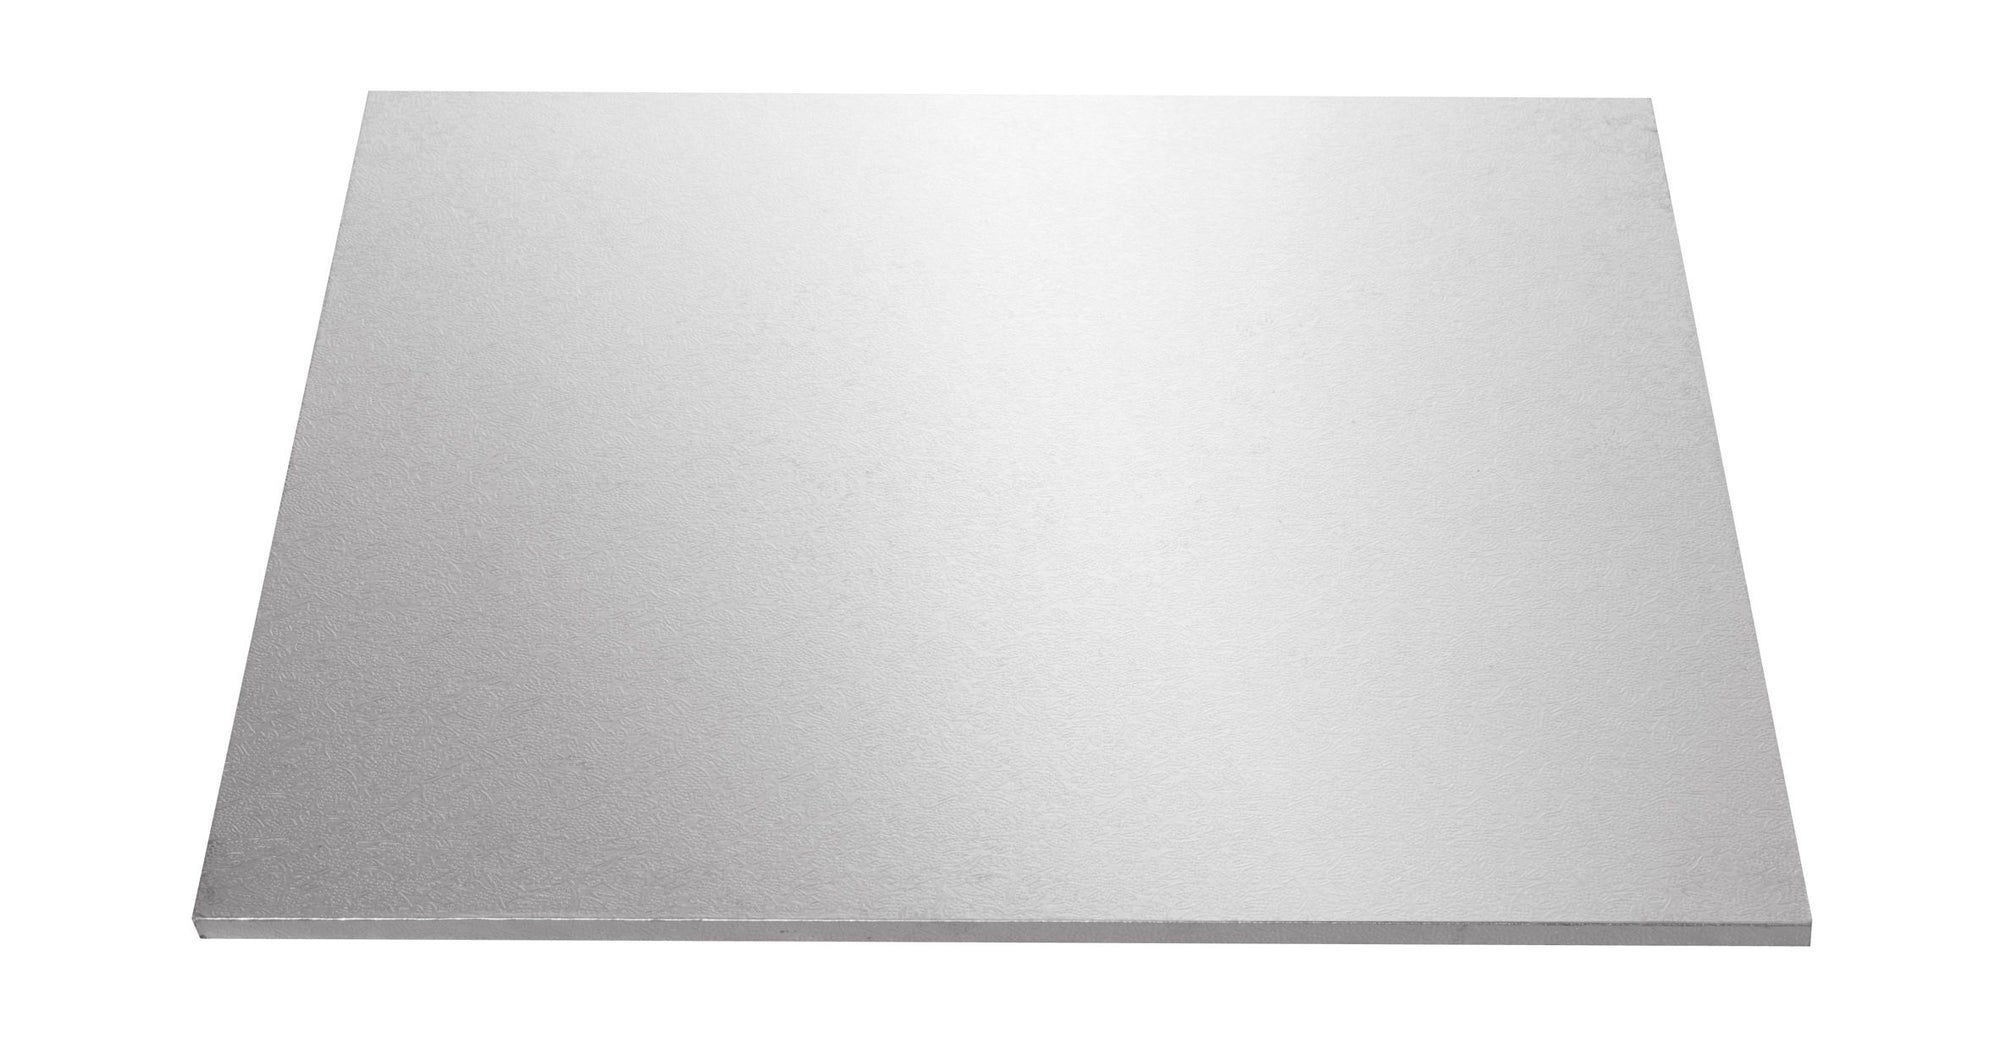 Rectangle 9x12 INCH Silver Foil Board (Mondo)